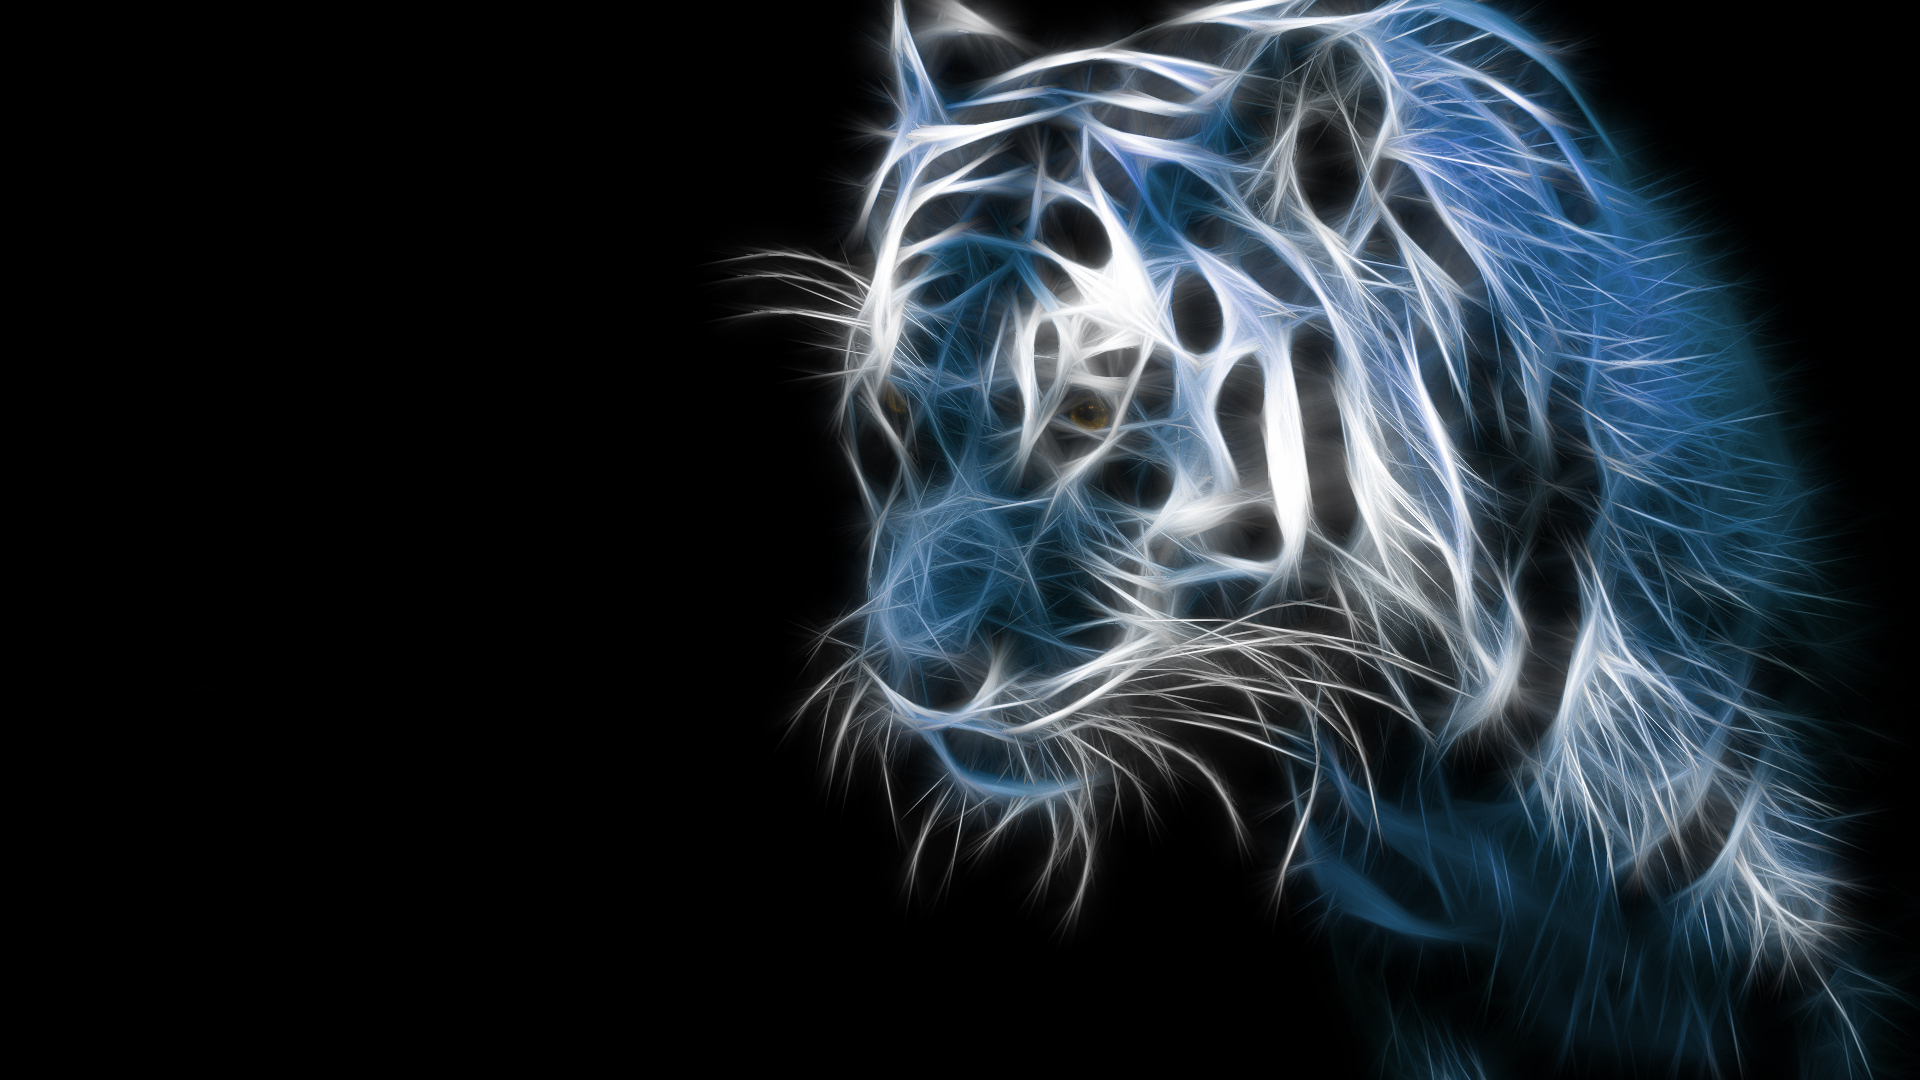 Abstract Tiger wallpaper 1080p